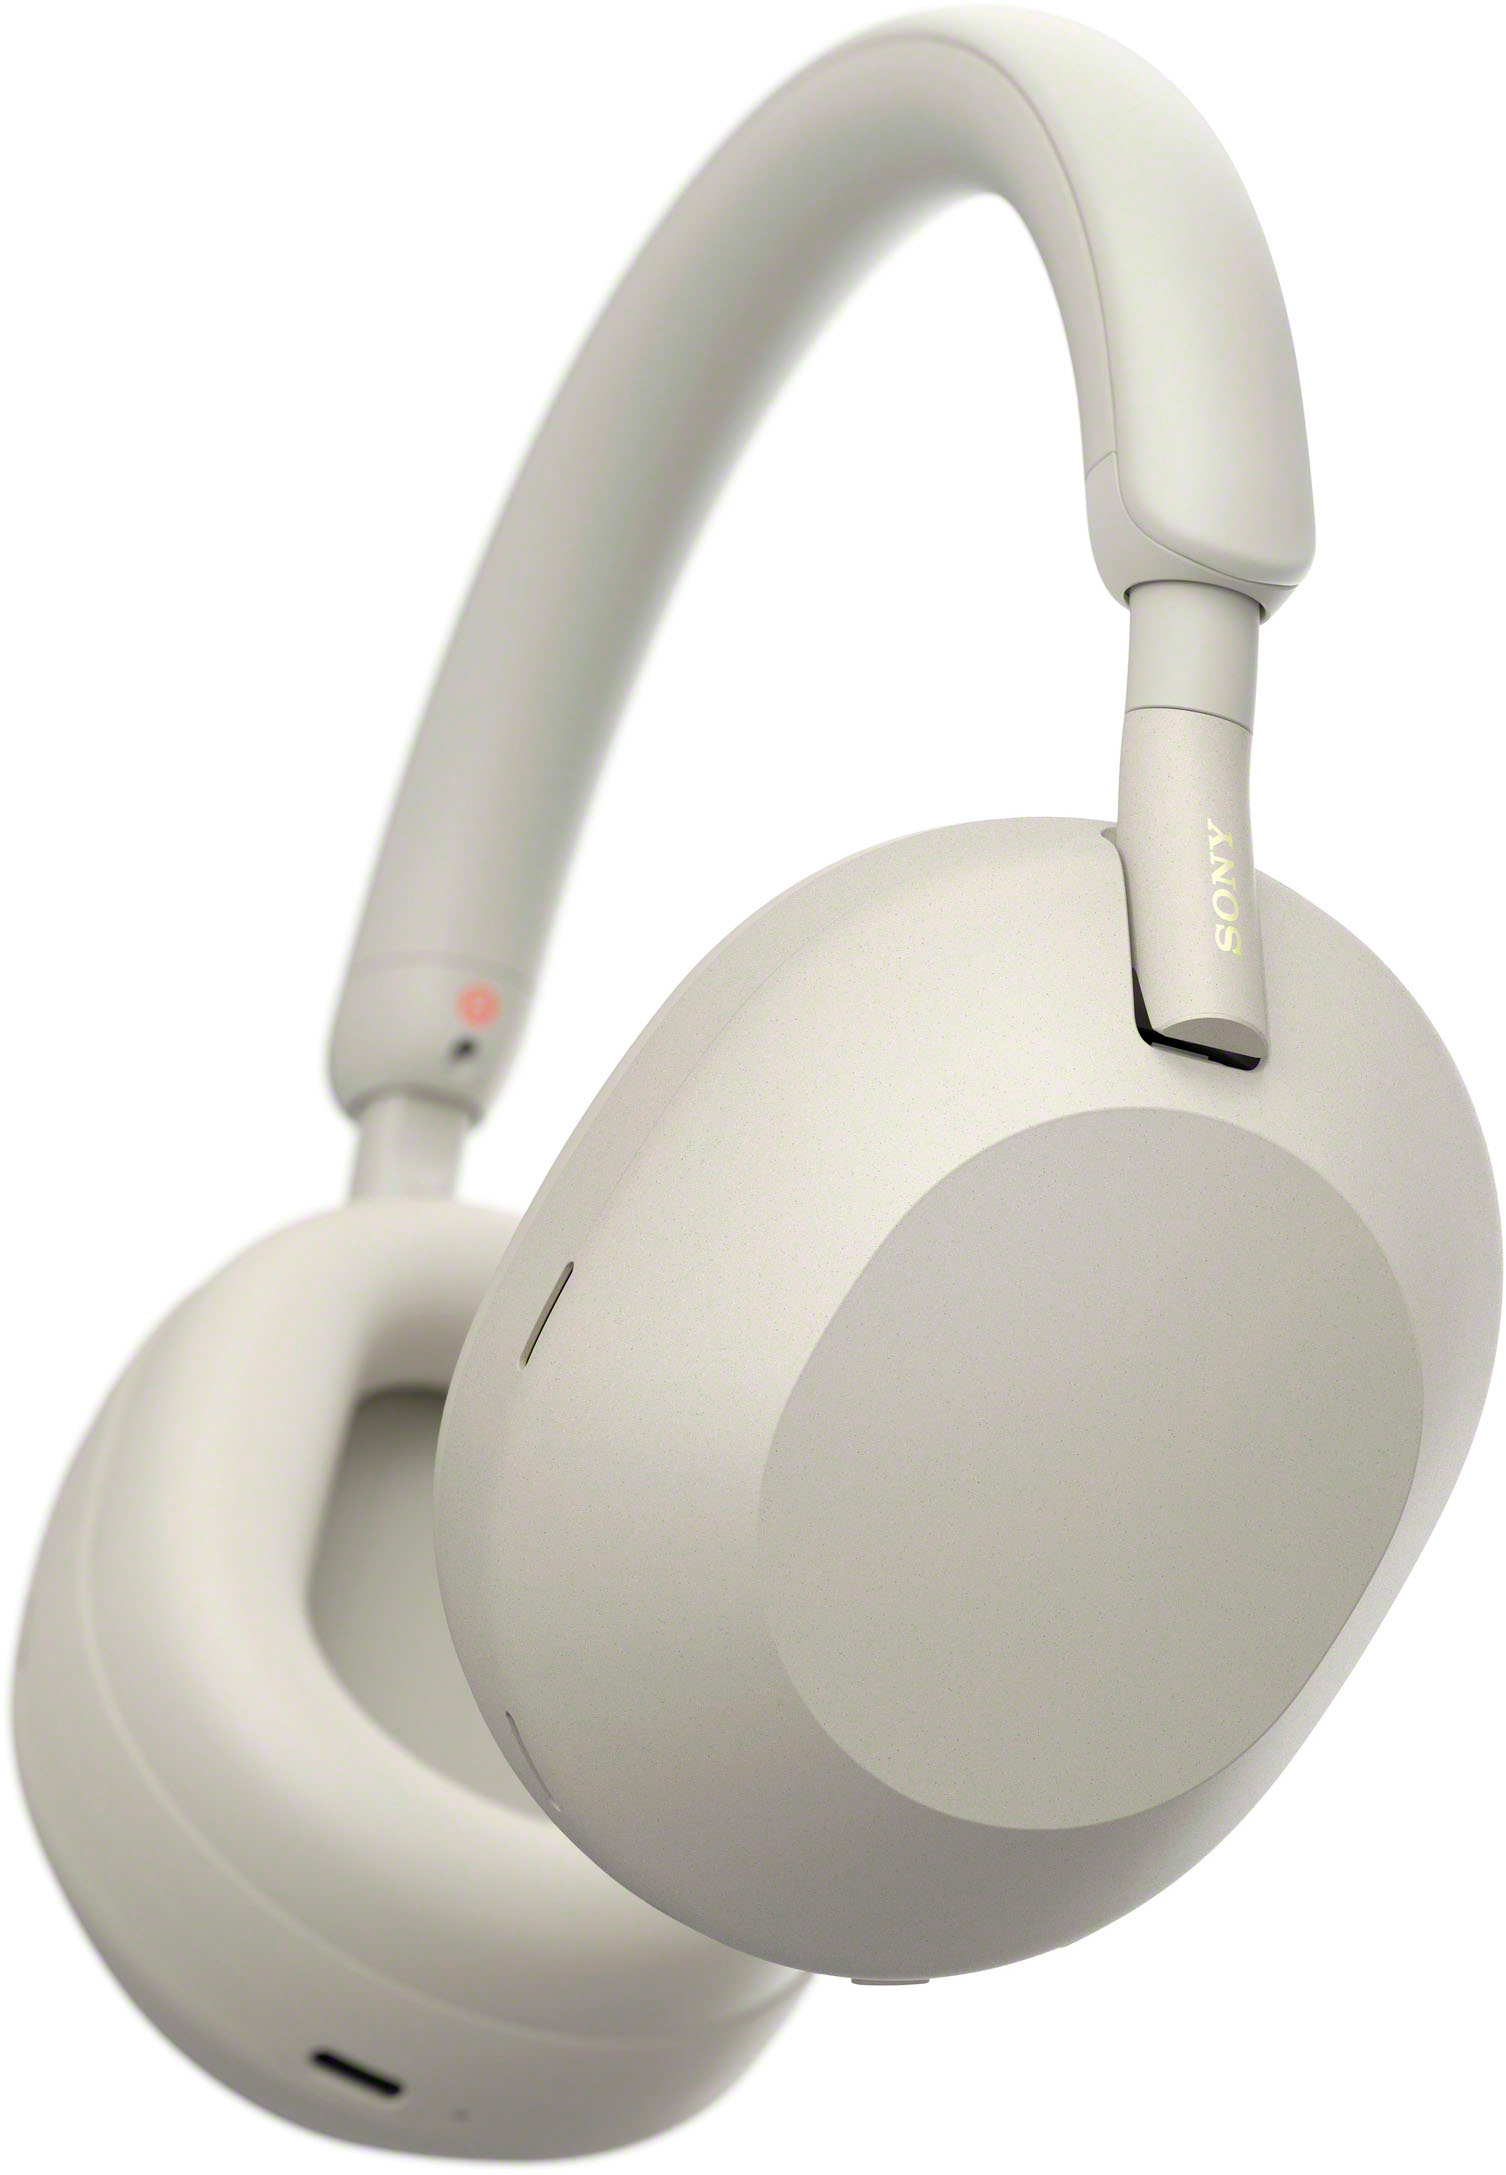 オーディオ機器 ヘッドフォン Sony WH-1000XM5 Wireless Noise-Canceling Over-the-Ear Headphones Silver  WH-1000XM5/S - Best Buy